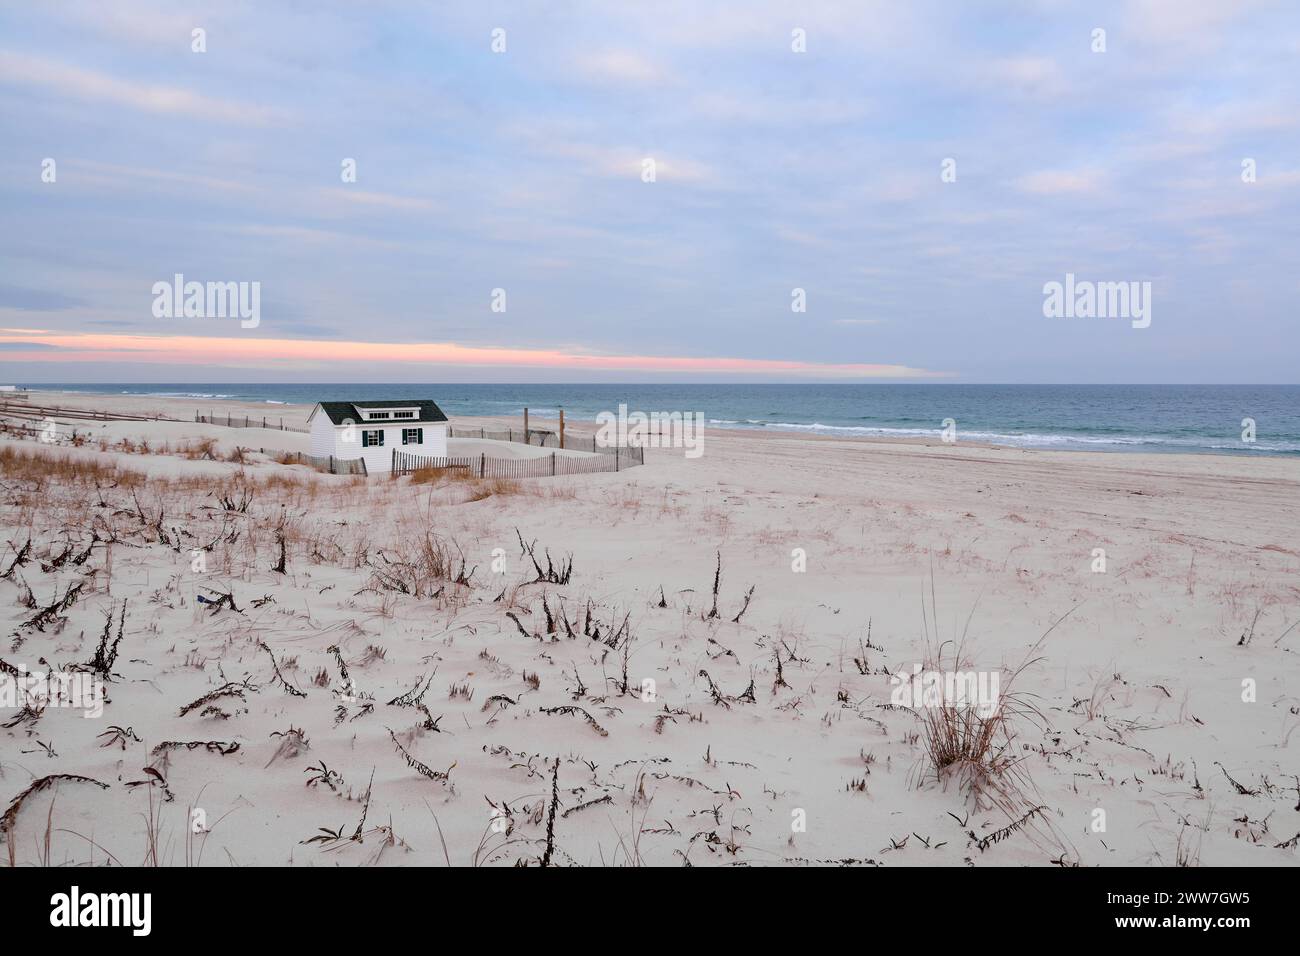 La tranquilla scena di una spiaggia all'alba, con una piccola cabina, cielo colorato e vegetazione costiera che creano un'atmosfera di pace e serenità. Foto Stock